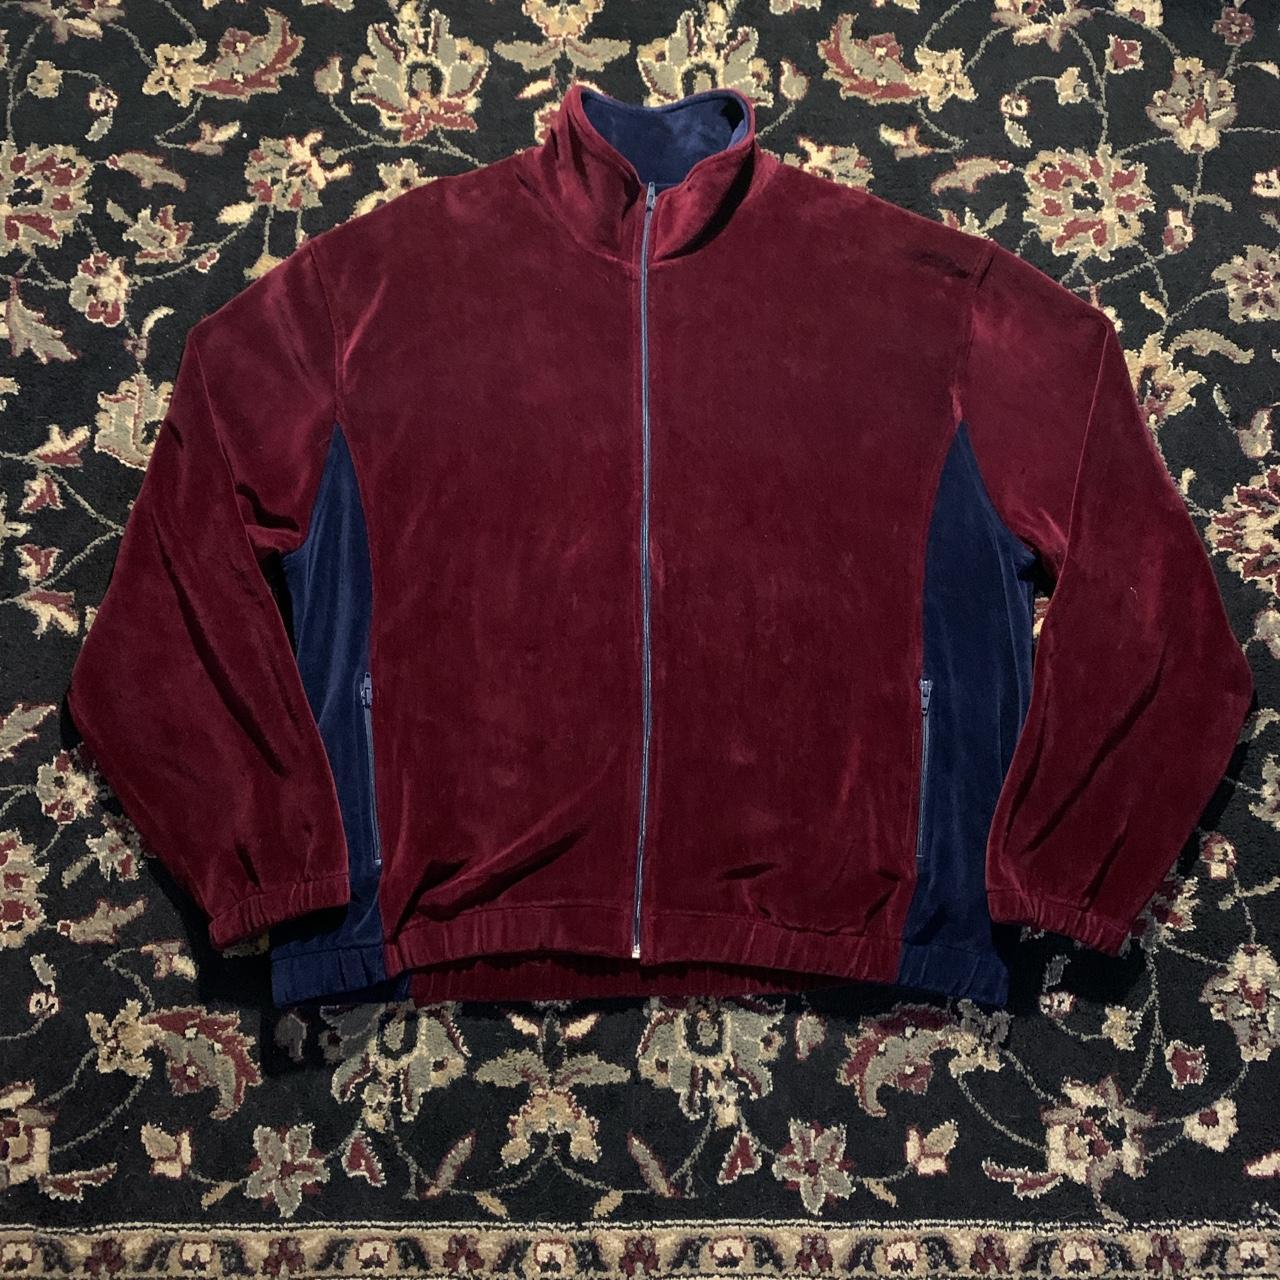 Vintage Neiman Marcus Suede Full zip jacket - Dark... - Depop